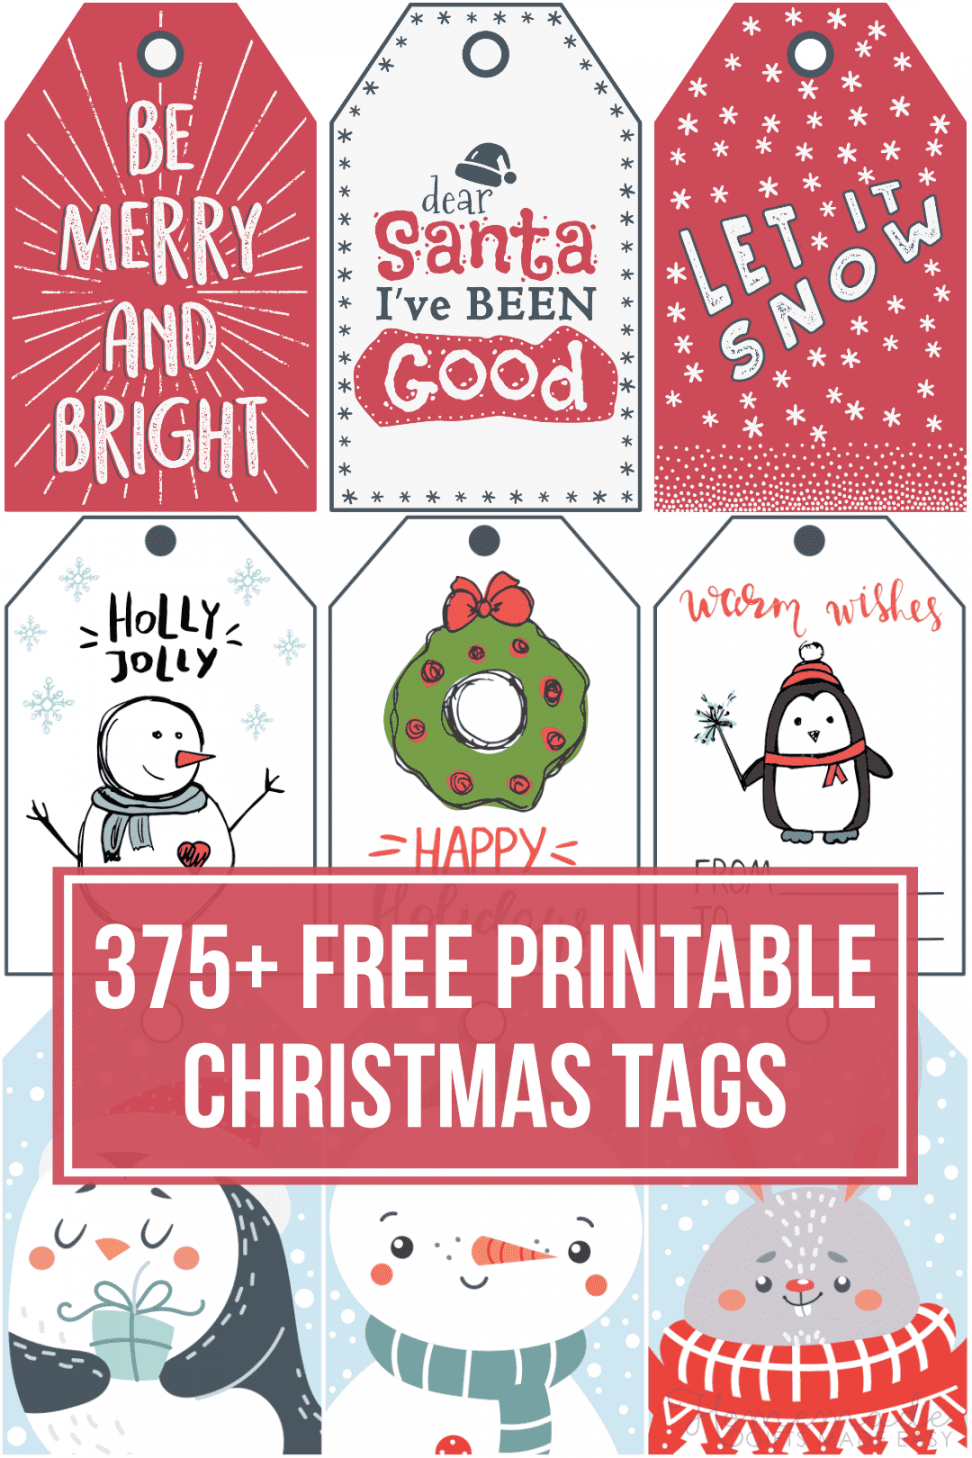 Free Printable Christmas Labels - Printable - + Free Printable Christmas Tags for your Holiday Gifts